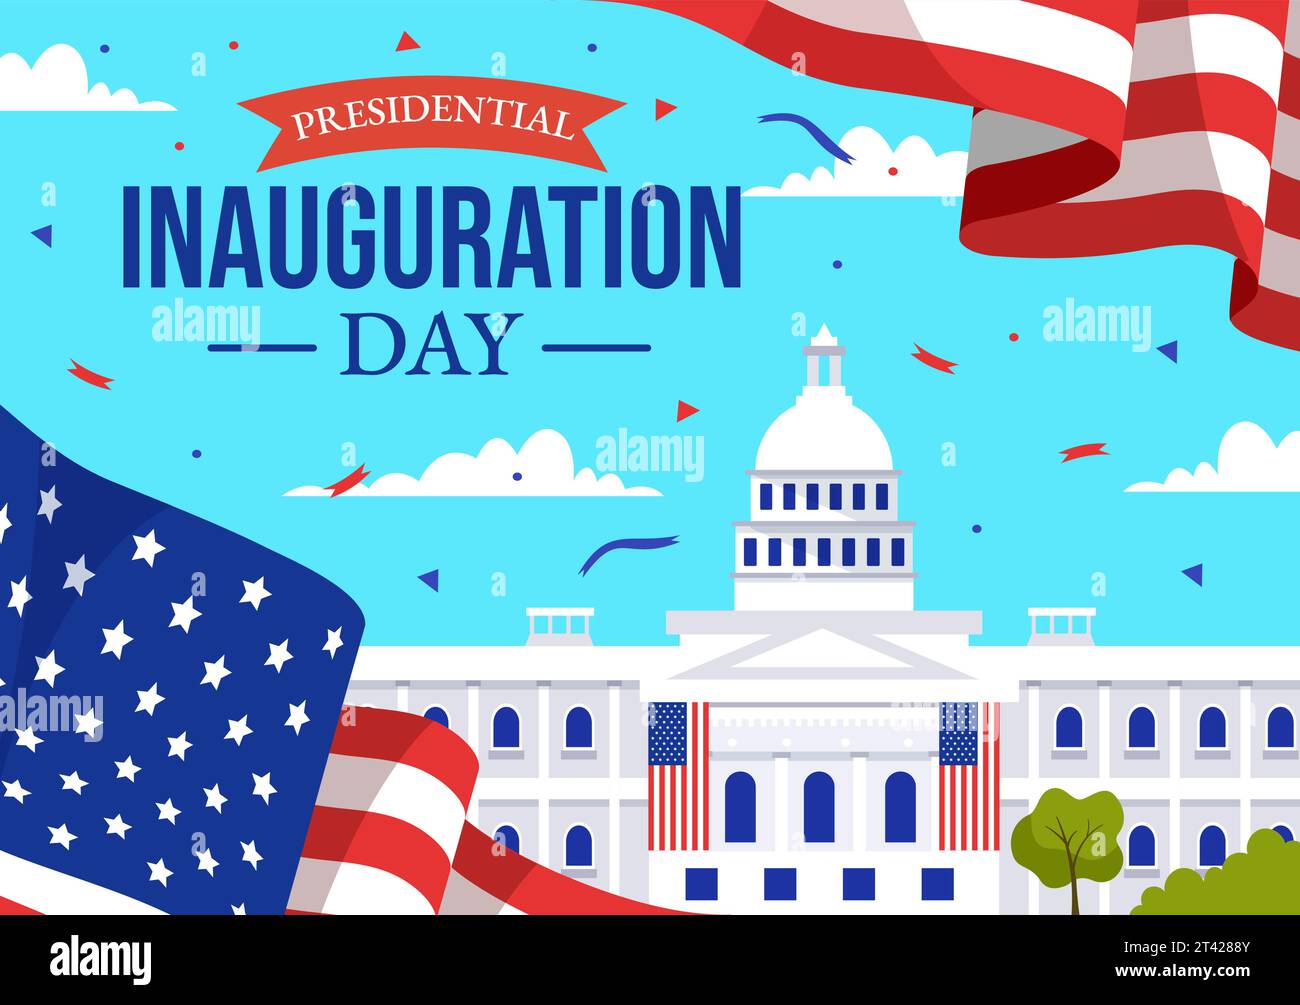 USA Präsidenteneinweihung Tag Vektor Illustration 20 Januar mit Kapitol Gebäude Washington D.C. und amerikanische Flagge im Hintergrund Design Stock Vektor